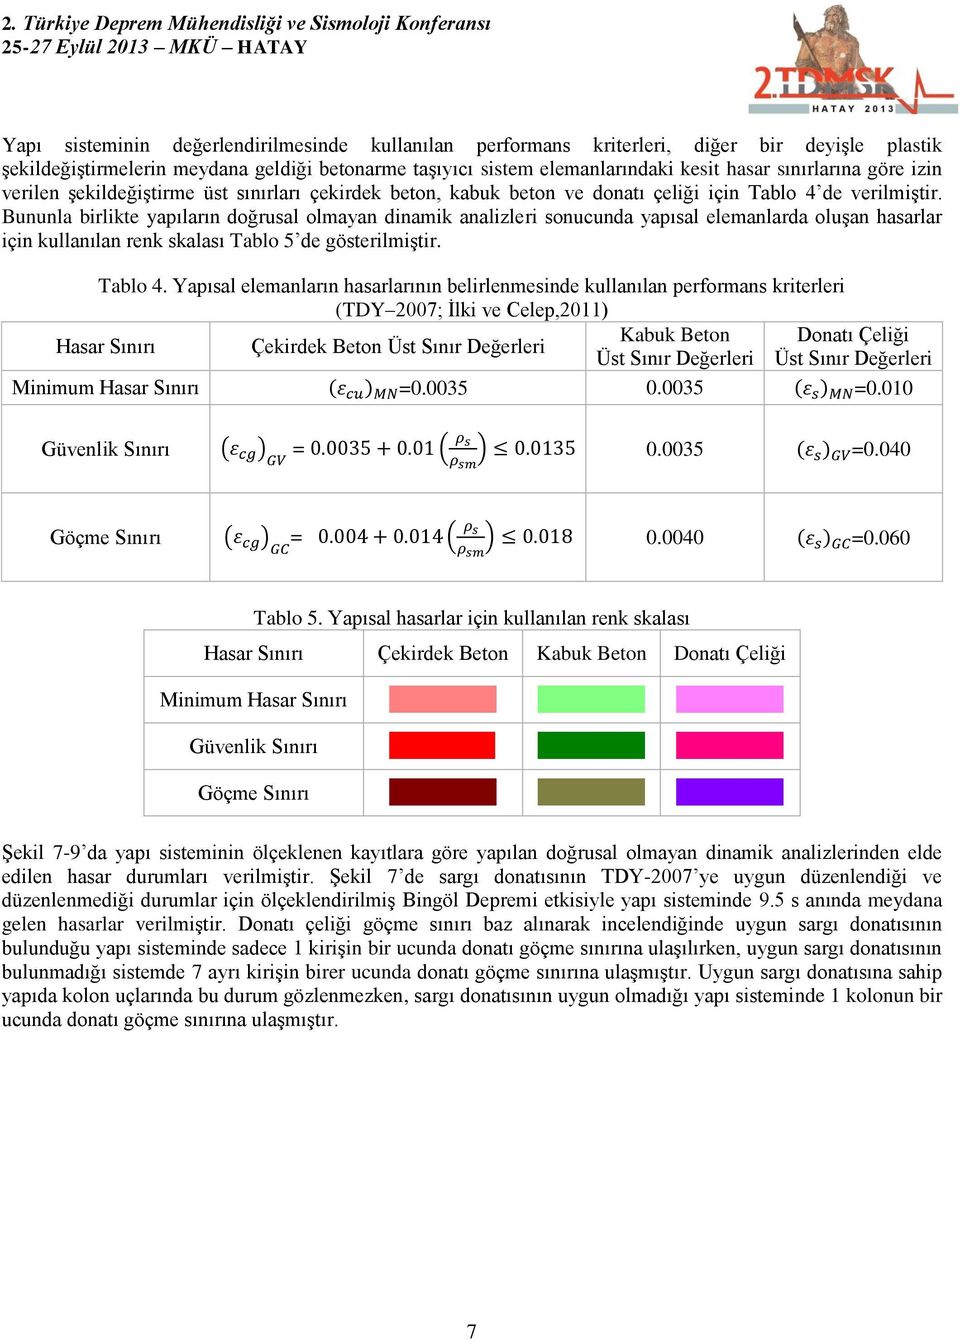 Bununla birlikte yapıların doğrusal olmayan dinamik analizleri sonucunda yapısal elemanlarda oluşan hasarlar için kullanılan renk skalası Tablo 5 de gösterilmiştir. Tablo 4.